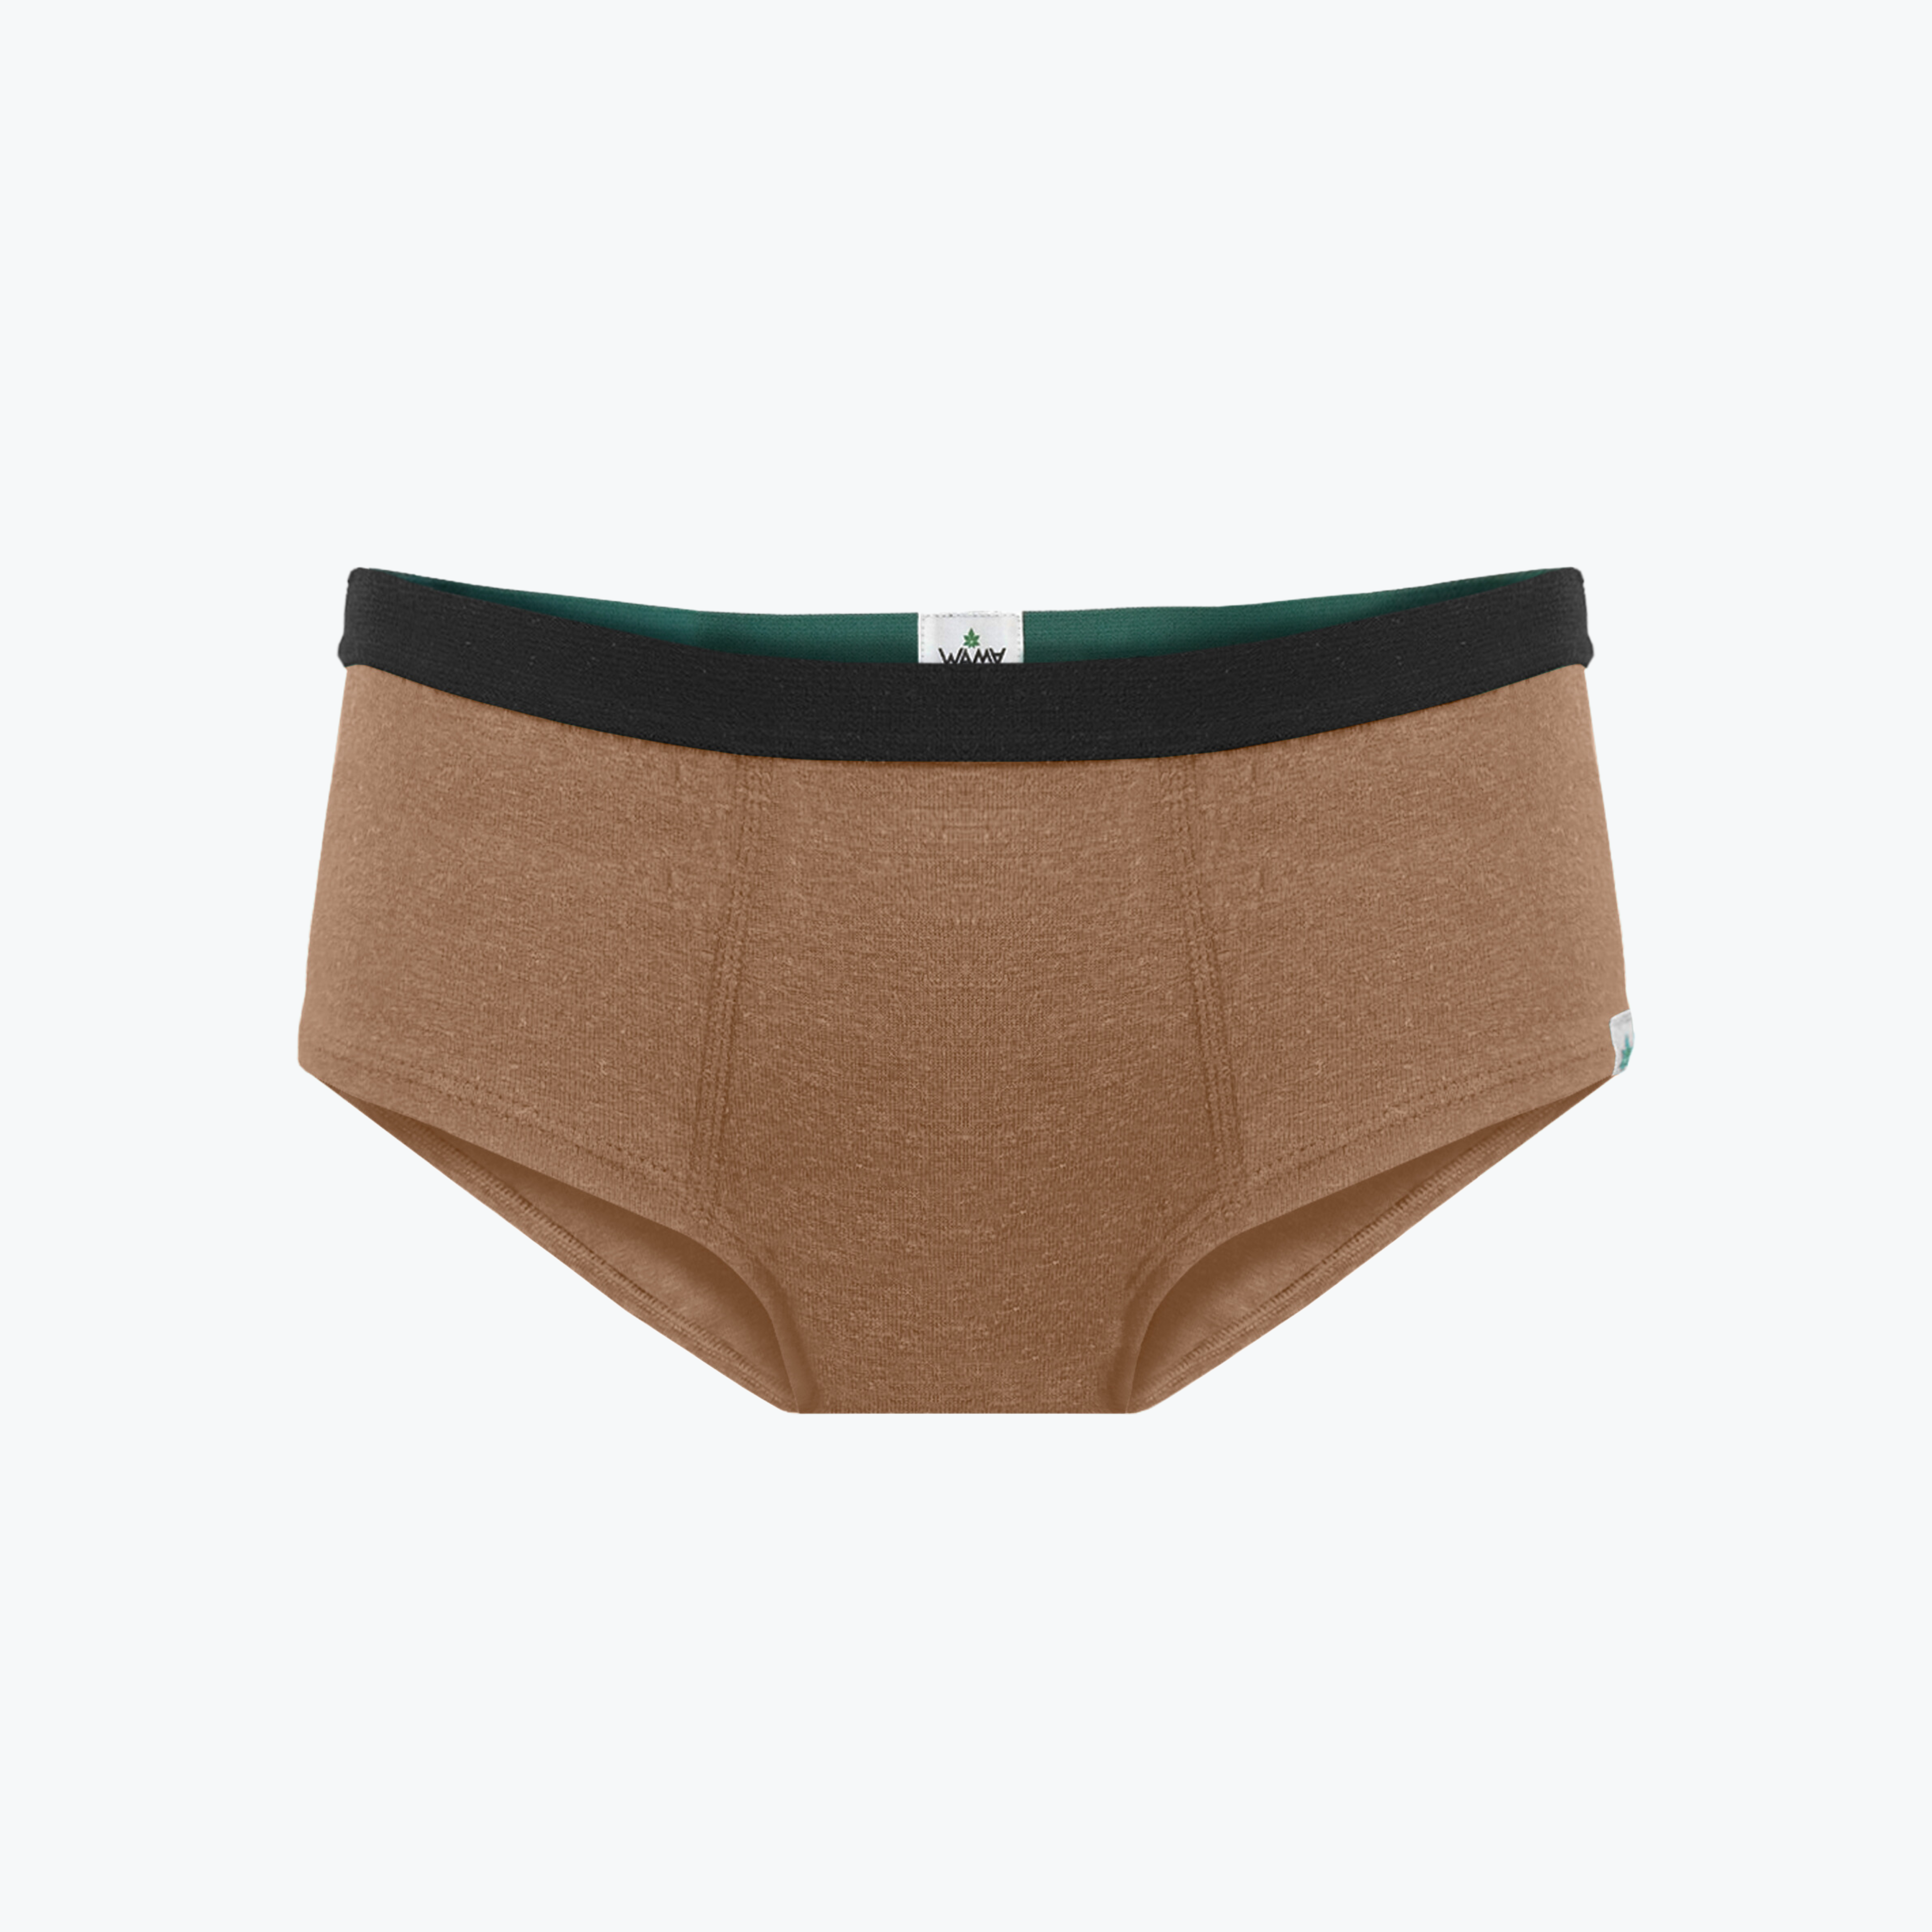 Testing Only] Hemp High Waisted Underwear FREE Gift 🎁 – WAMA Underwear